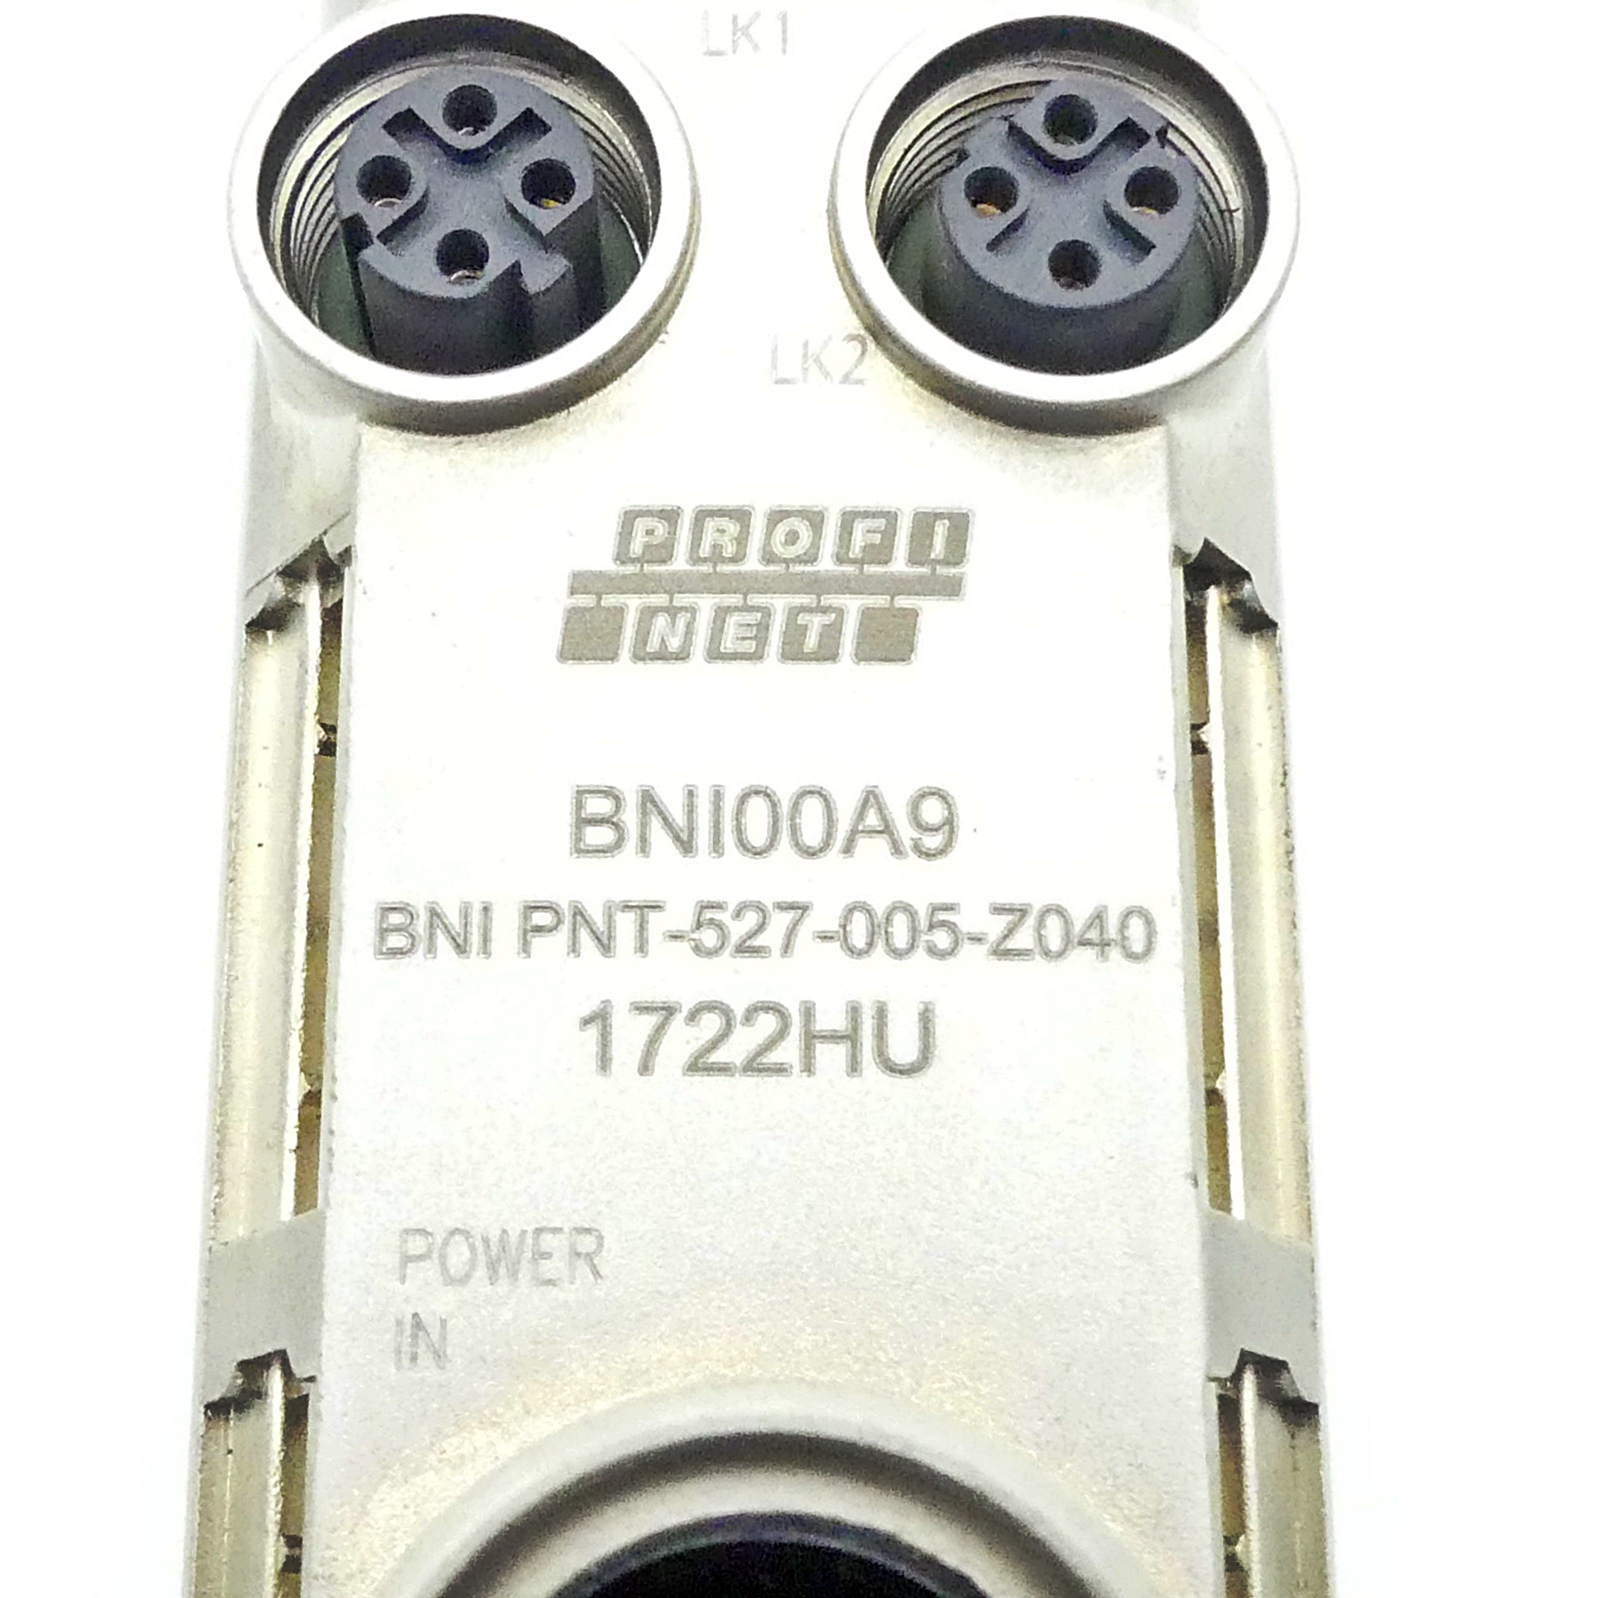 Netzwerk-Module für Profinet BNI00A9 